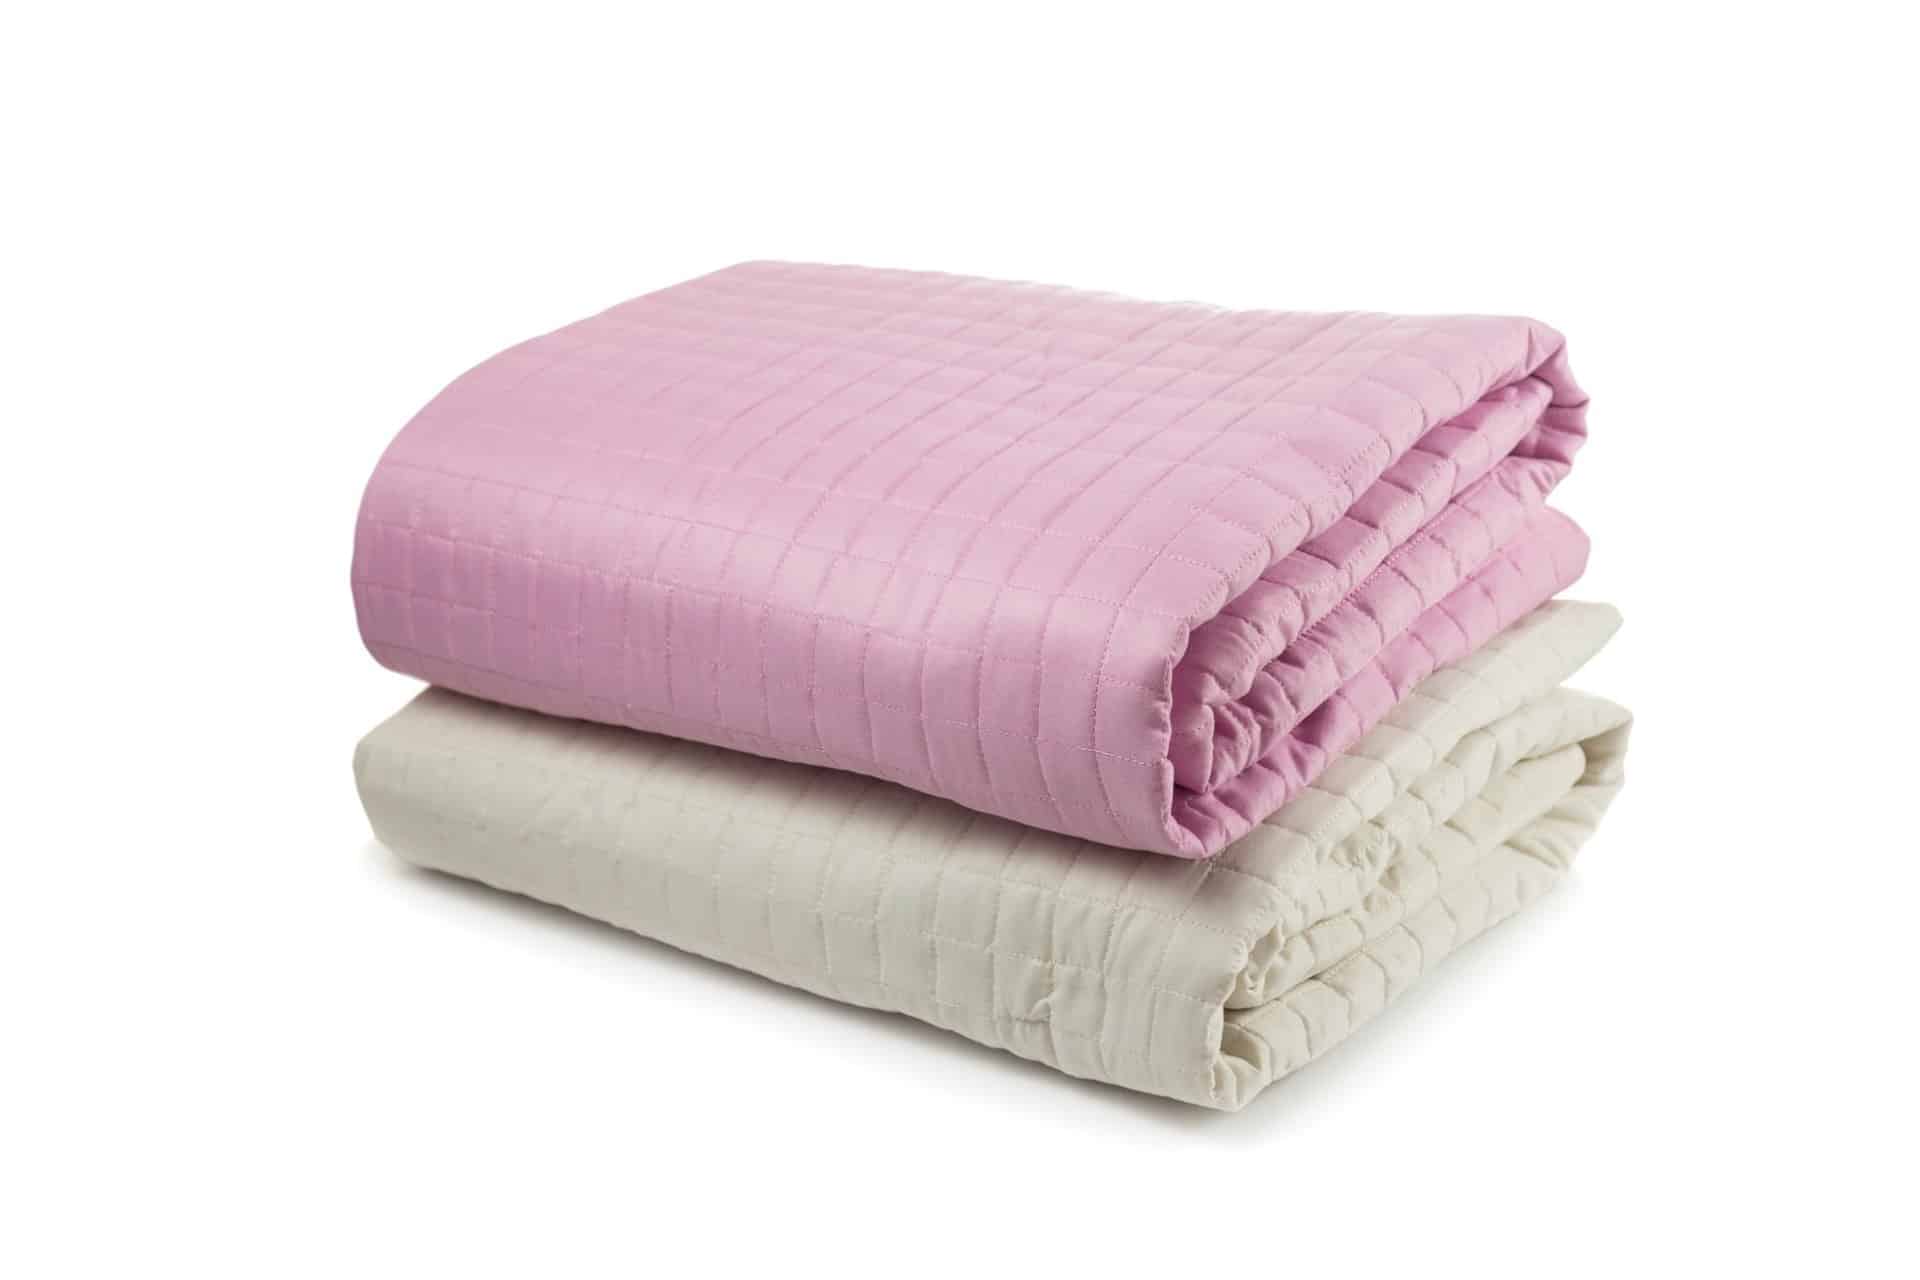 Weighted Blanket Sleep Benefits | Blog | Sleep Health